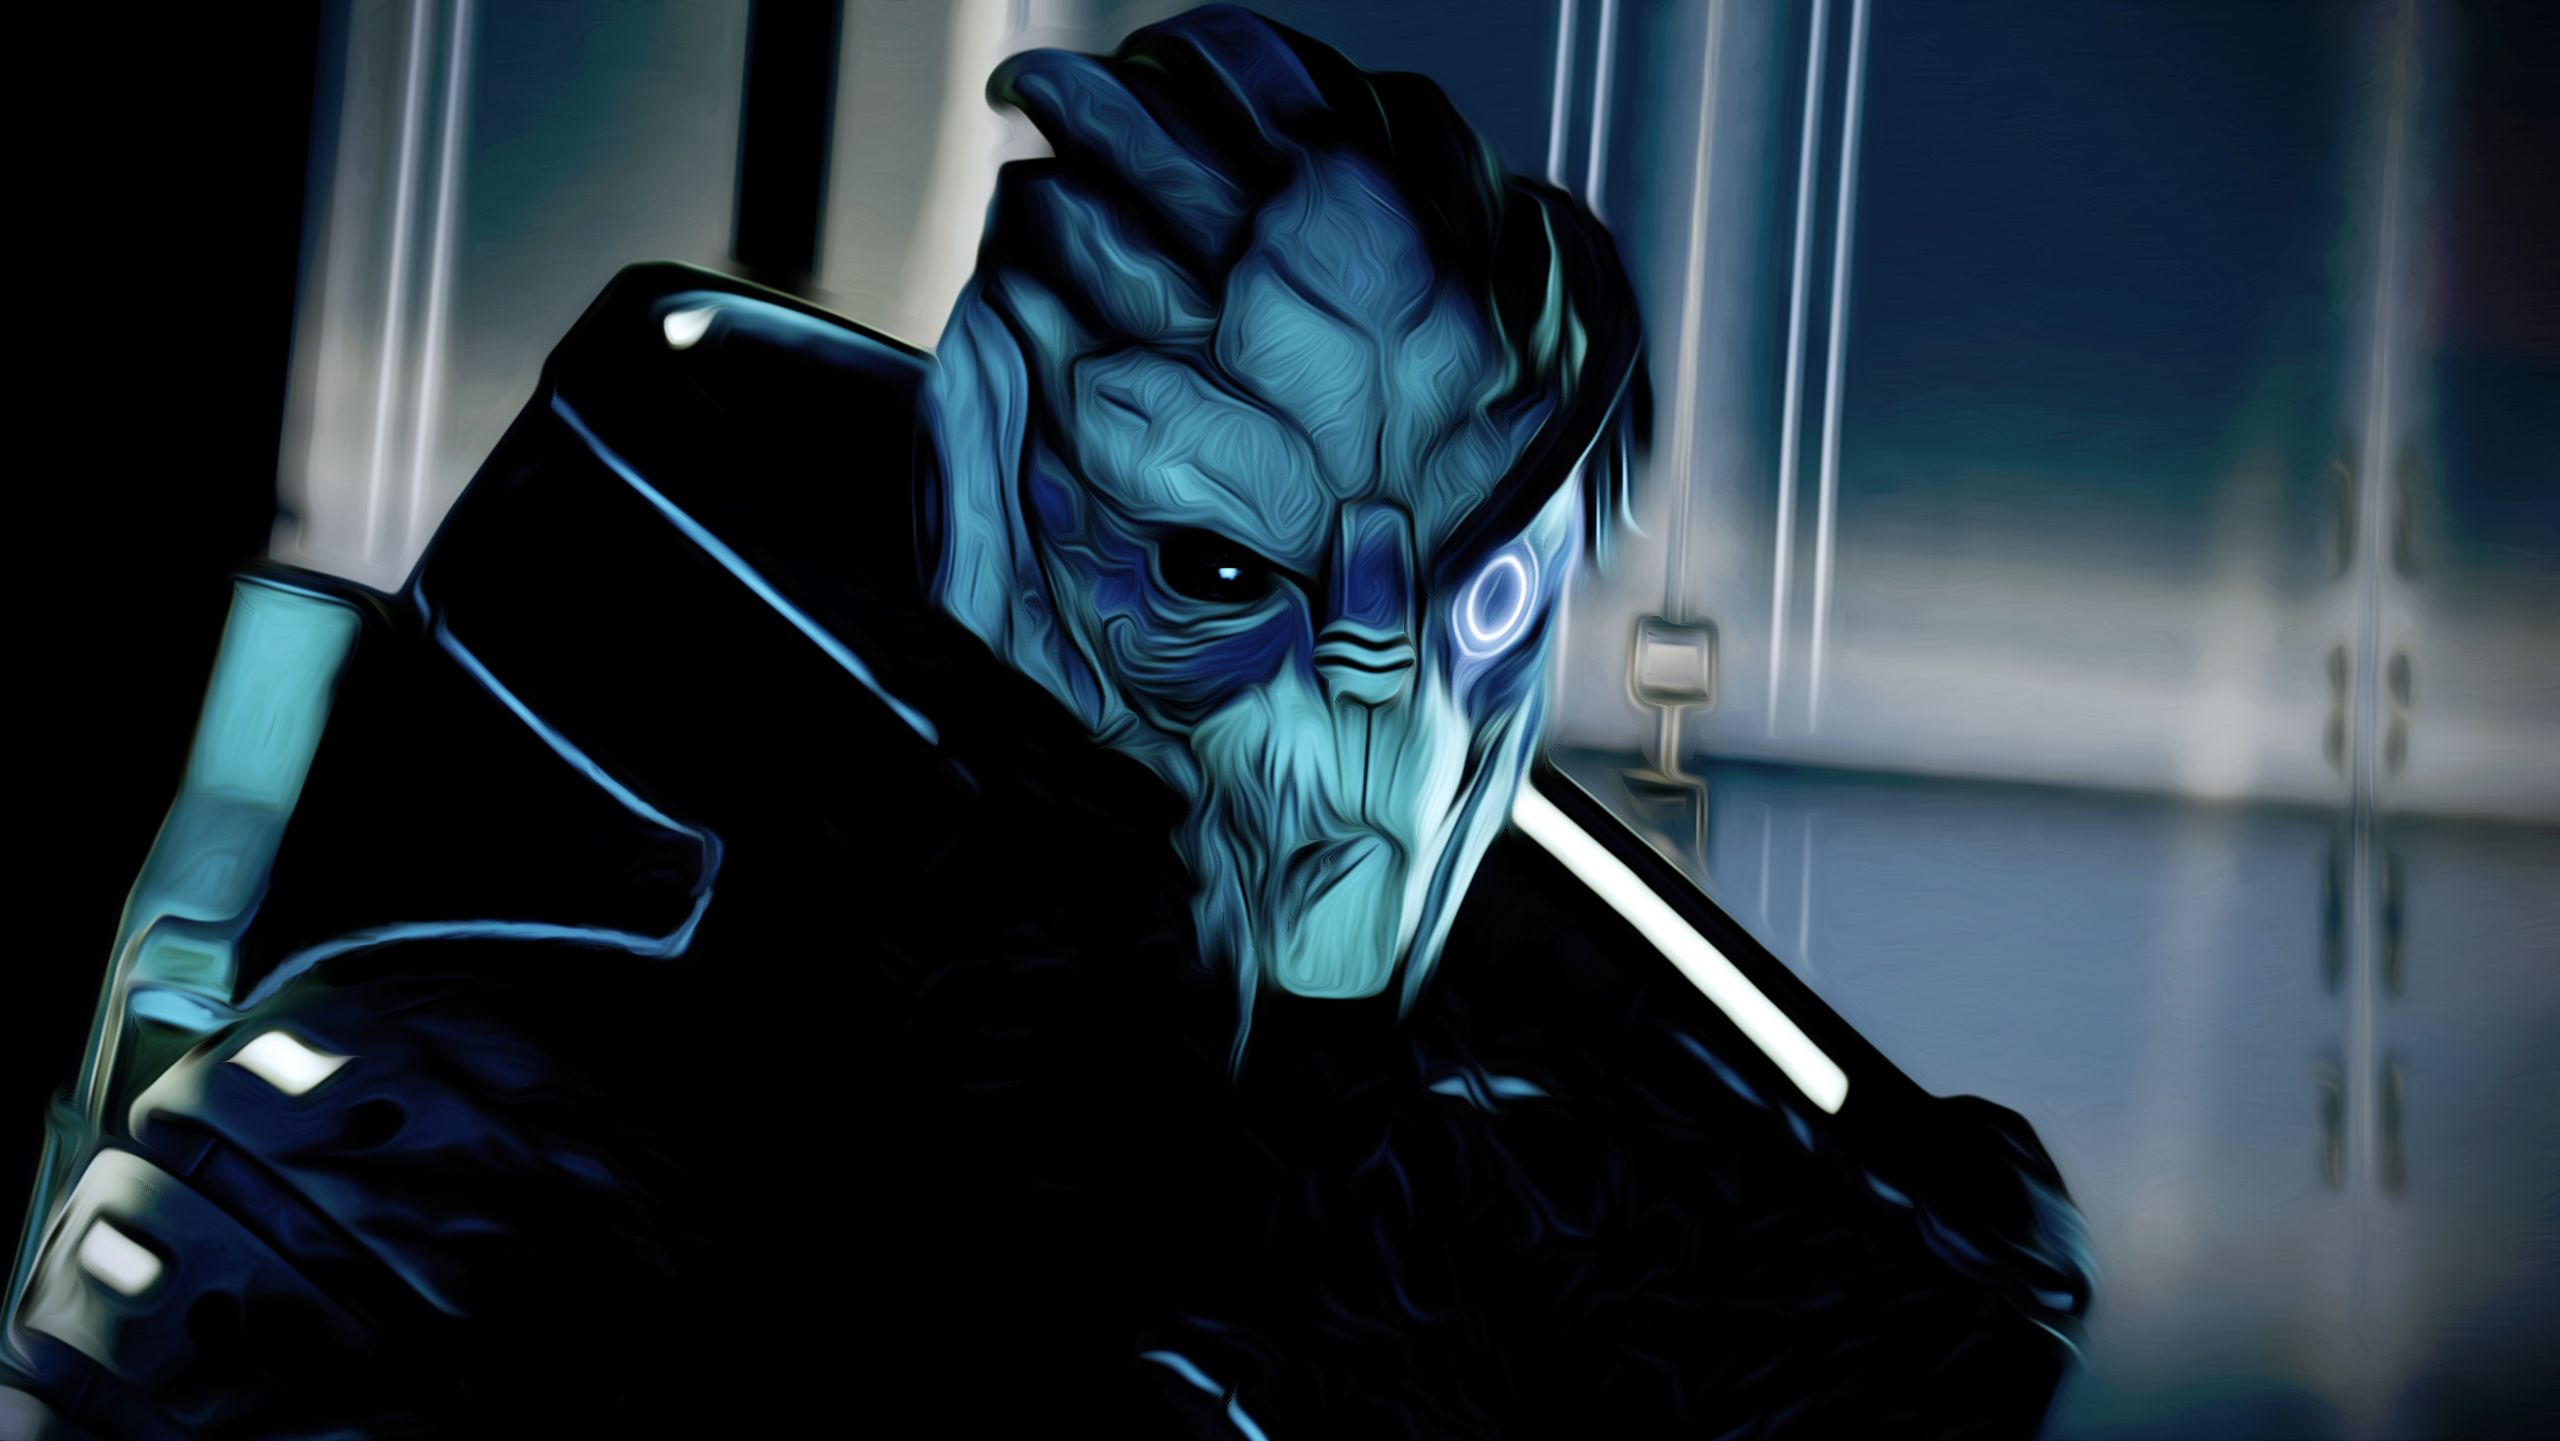 Download mobile wallpaper Garrus Vakarian, Mass Effect 2, Mass Effect, Video Game for free.